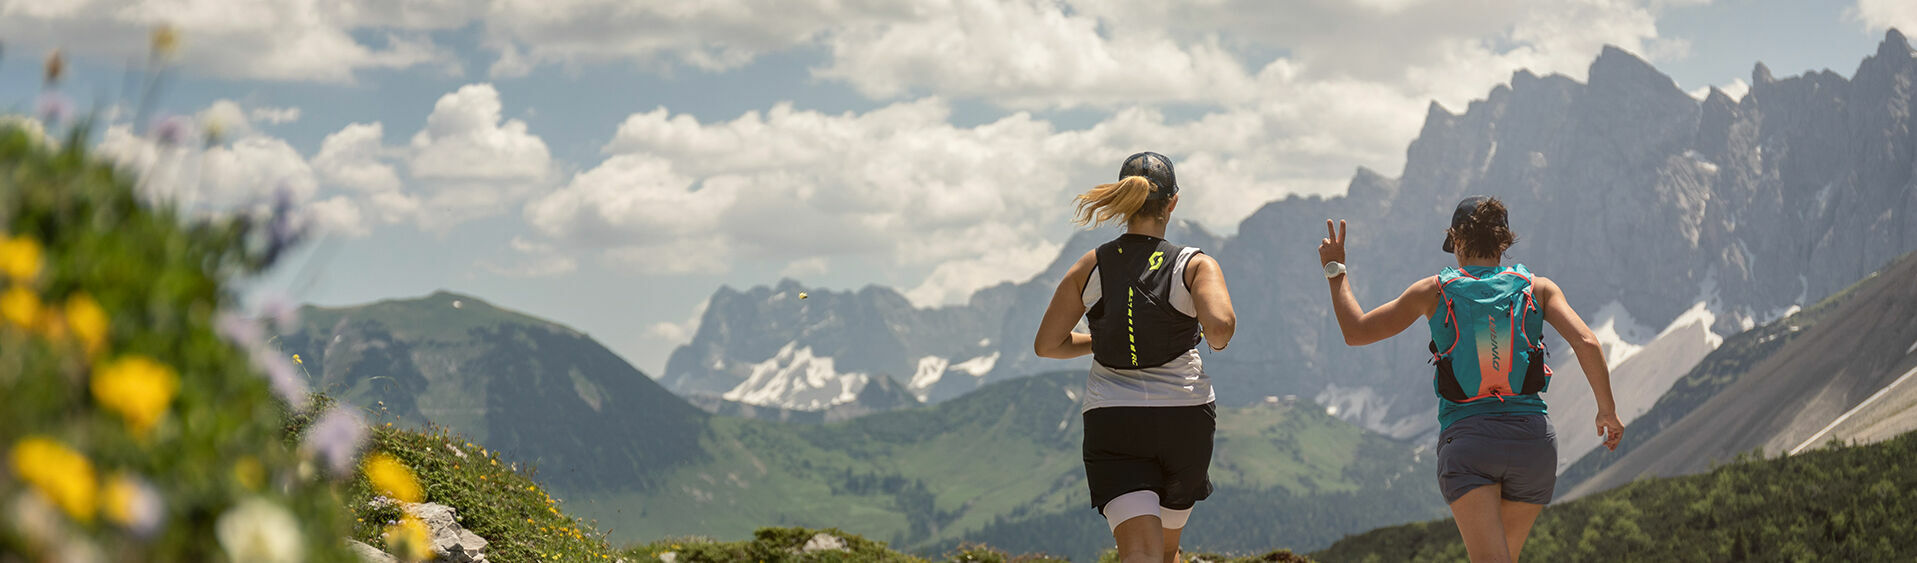 Trailrunner trainieren auf einer Forstsraße im Naturpark Karwendel in wunderschöner Umgebung.